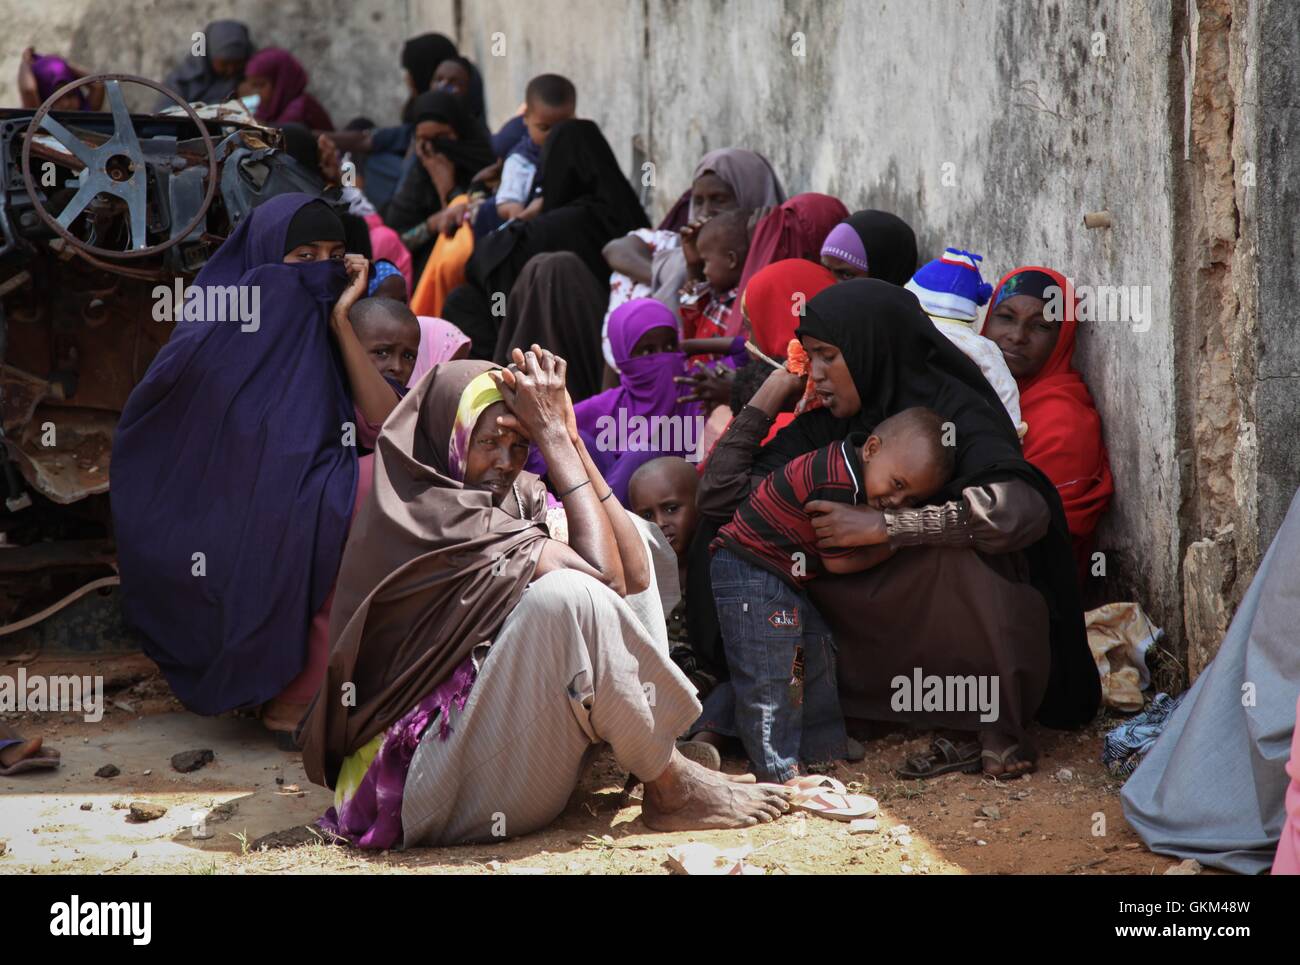 La SOMALIE, Kismayo : Dans un photogragh prises le 19 août 2013 et publié par l'Union africaine et l'équipe de support d'information des Nations Unies 31 août, les femmes et les enfants d'attendre dans l'ombre d'un bâtiment abandonné pour voir un médecin dans une clinique médicale gratuite fournie par le contingent Kenyan avec la Mission de l'Union africaine en Somalie (AMISOM) dans le sud de la ville portuaire de Kismayo en Somalie. Ouvert 7 jours par semaine et de voir une moyenne de 80 patients par jour à partir de Kismayo et ses villages, le personnel médical de l'AMISOM fournir les soins de santé gratuits pour les civils de Kismayo, traiter une variété de cas y compris le paludisme, Banque D'Images